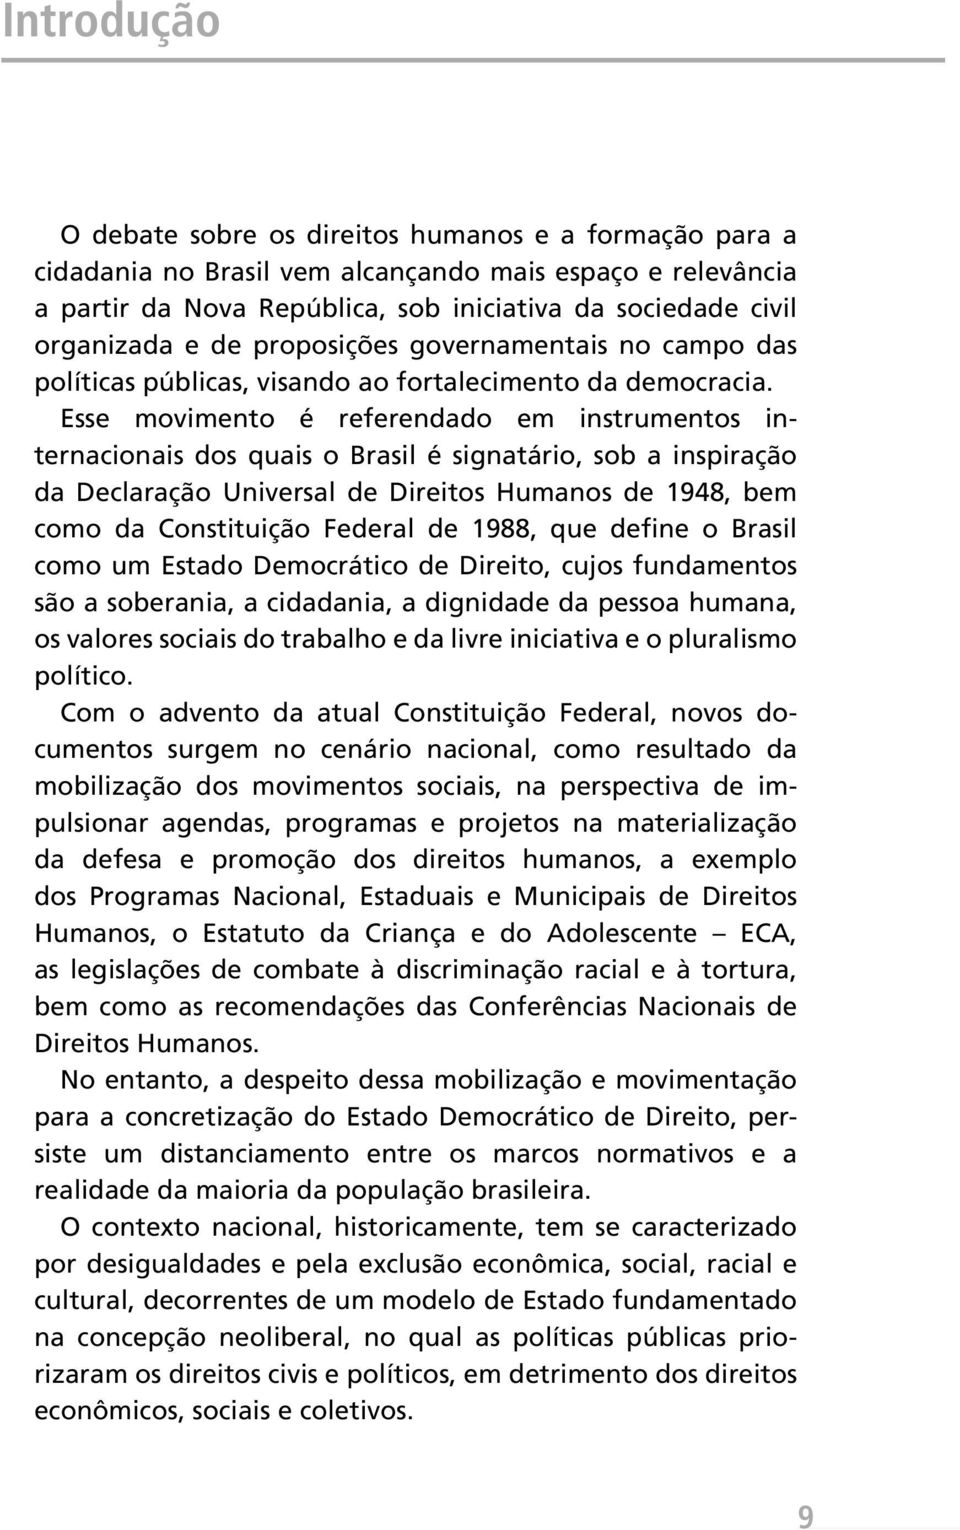 Esse movimento é referendado em instrumentos internacionais dos quais o Brasil é signatário, sob a inspiração da Declaração Universal de Direitos Humanos de 1948, bem como da Constituição Federal de